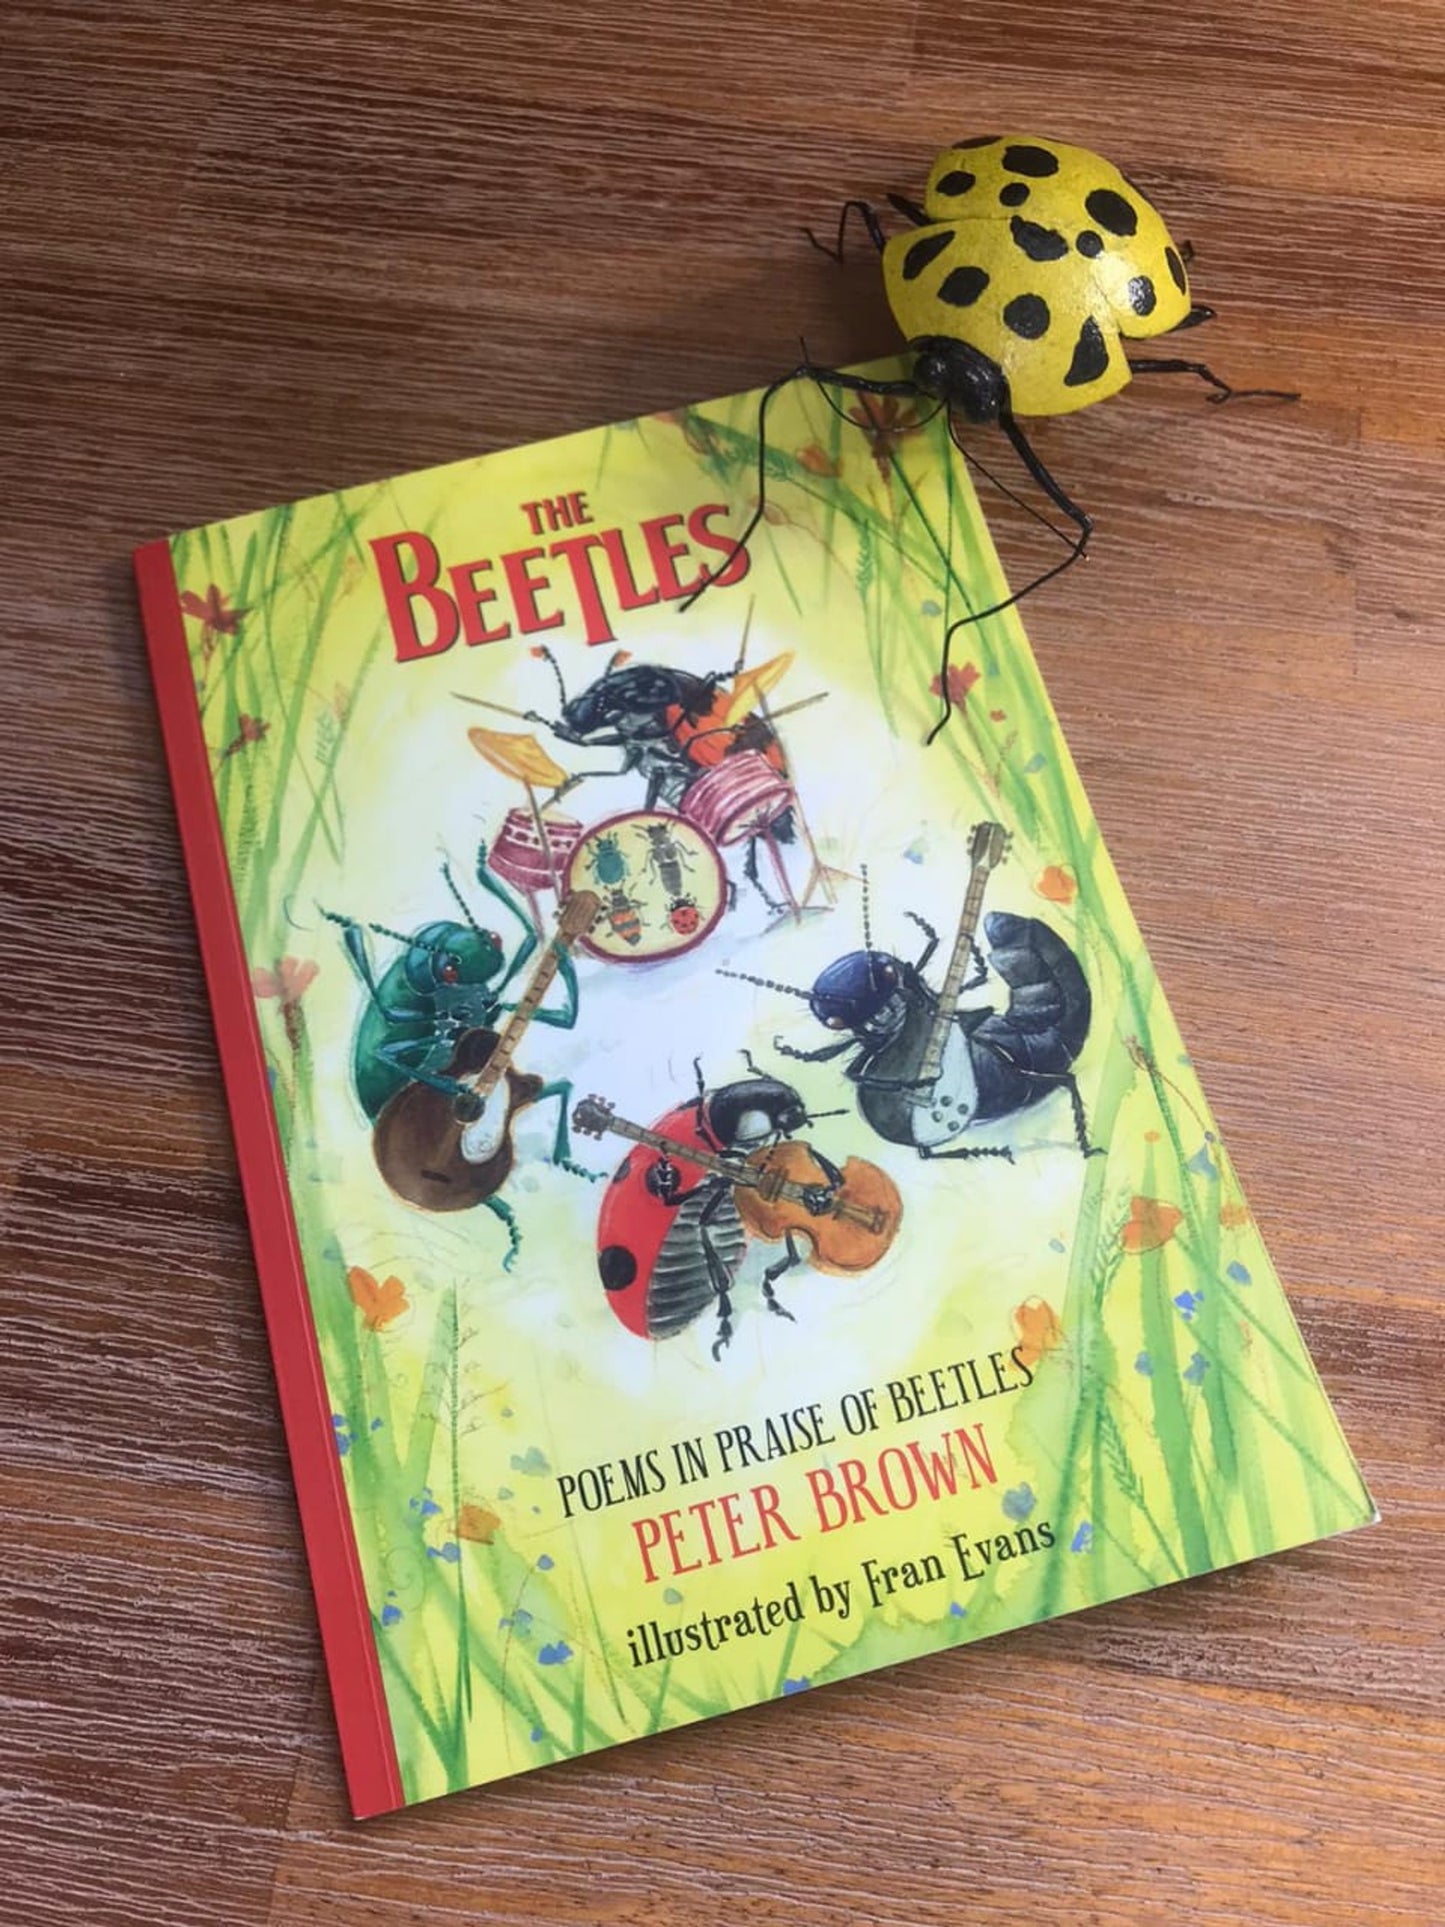 The Beetles: Poems in Praise of Beetles